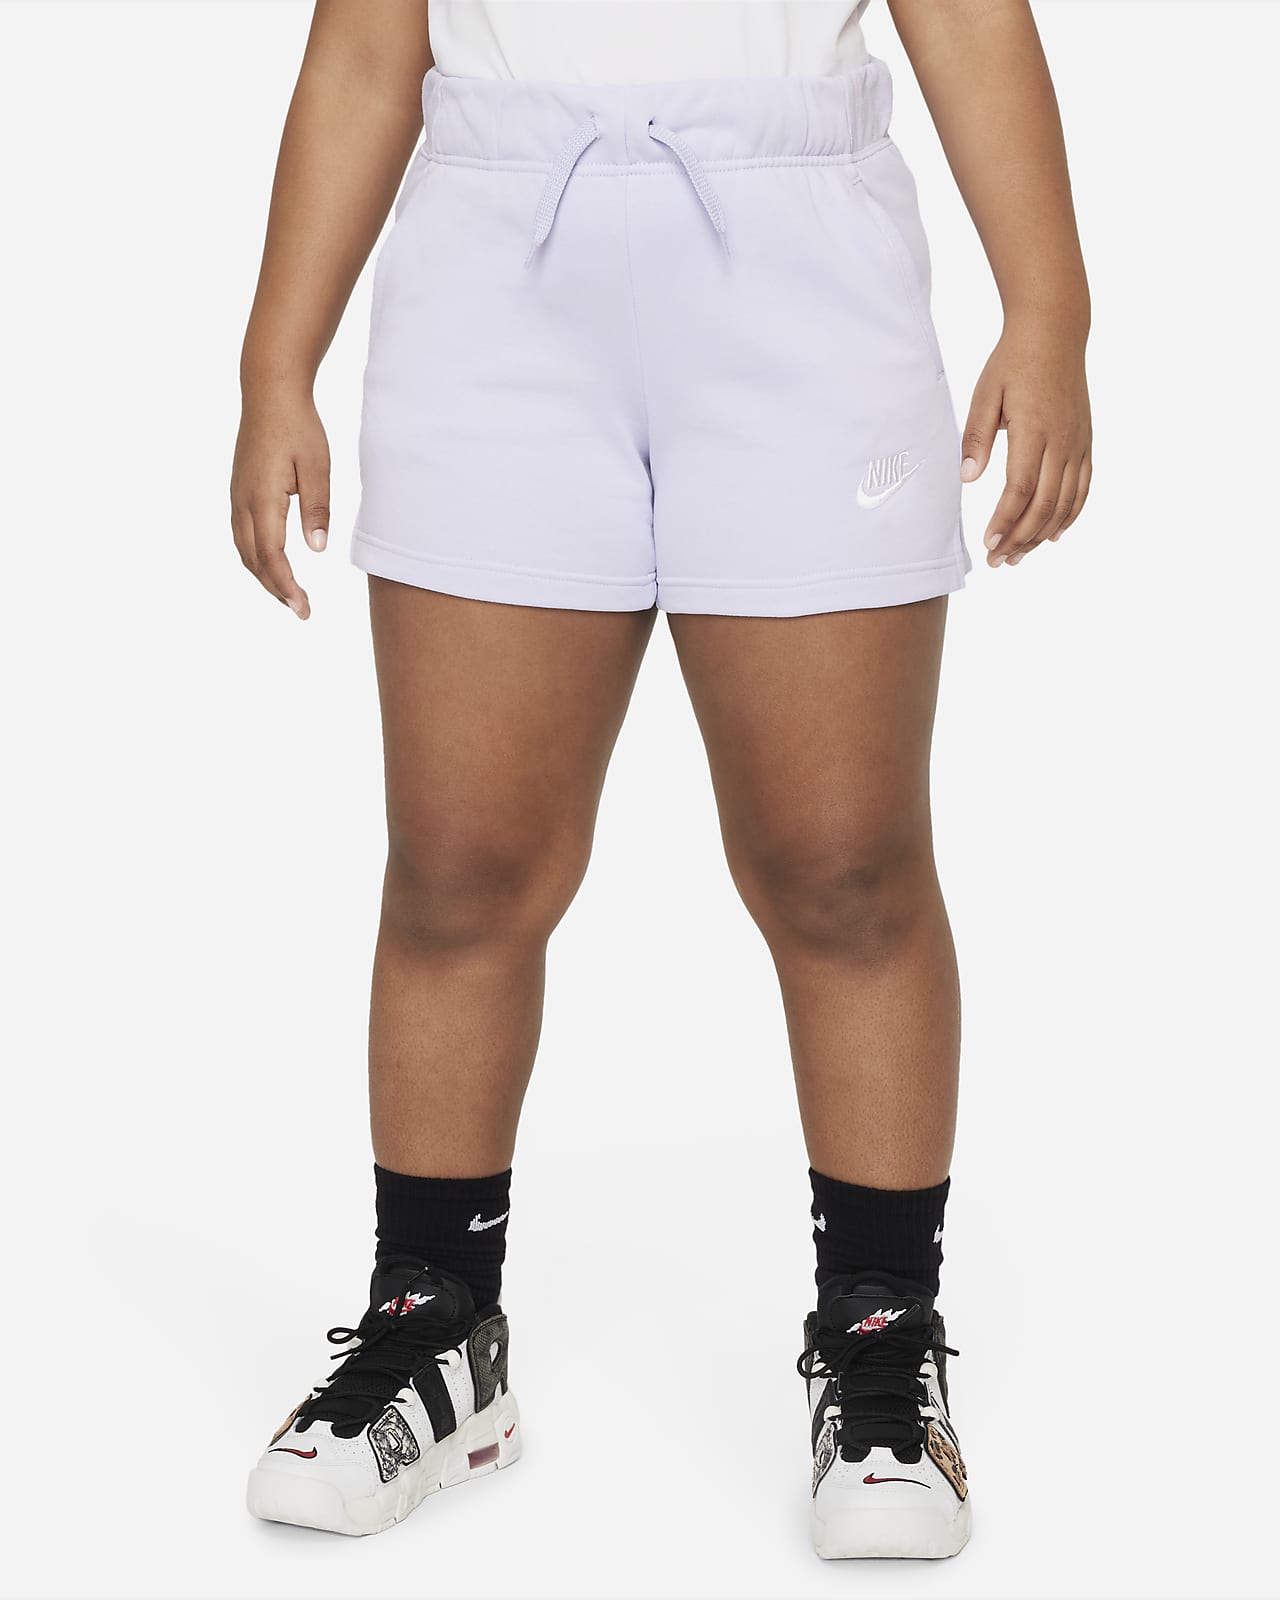 Ja invoegen Universeel Nike Sportswear Club Meisjesshorts van sweatstof (ruimere maten). Nike BE